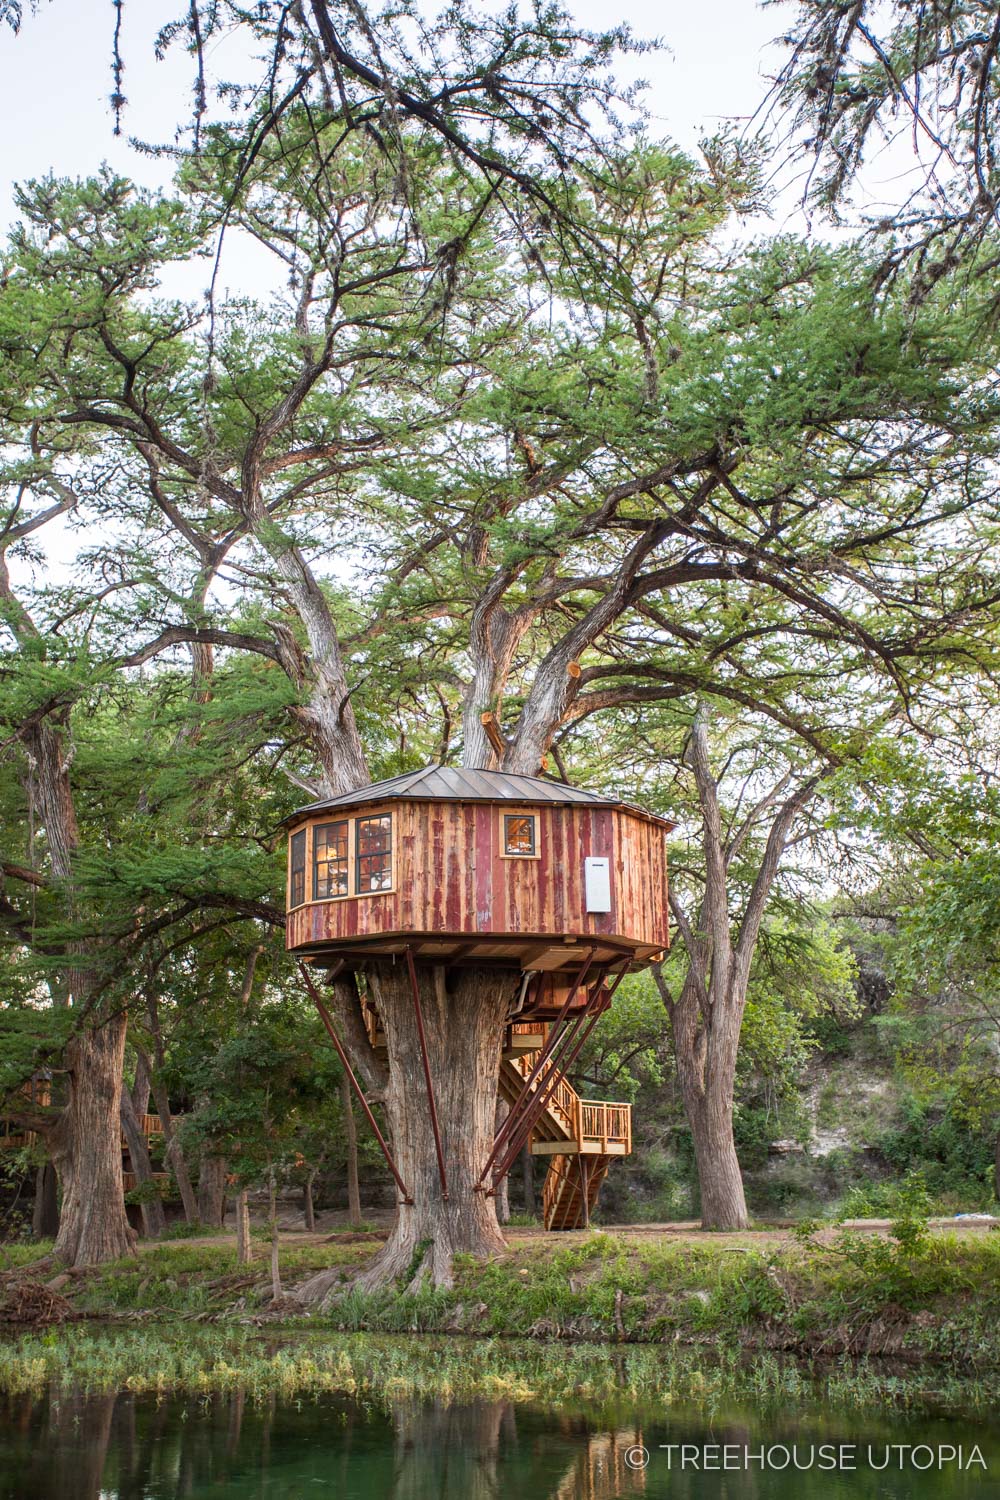  Carousel at Treehouse Utopia 